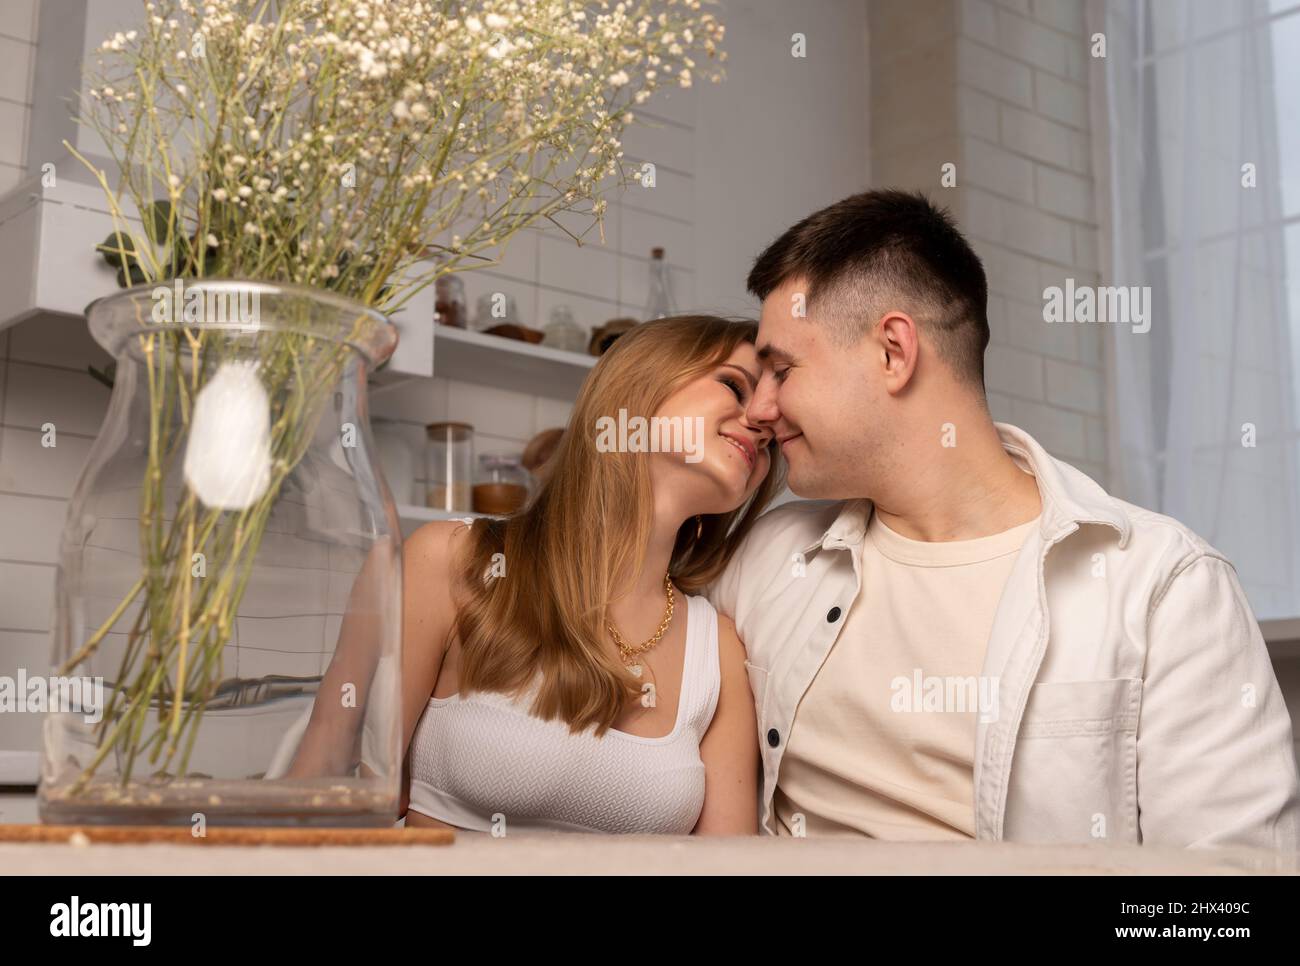 Coppia felice seduta al tavolo da cucina, baciando delicatamente e guardandosi l'un l'altro. Concetto di amore e romanticismo. Foto di alta qualità Foto Stock